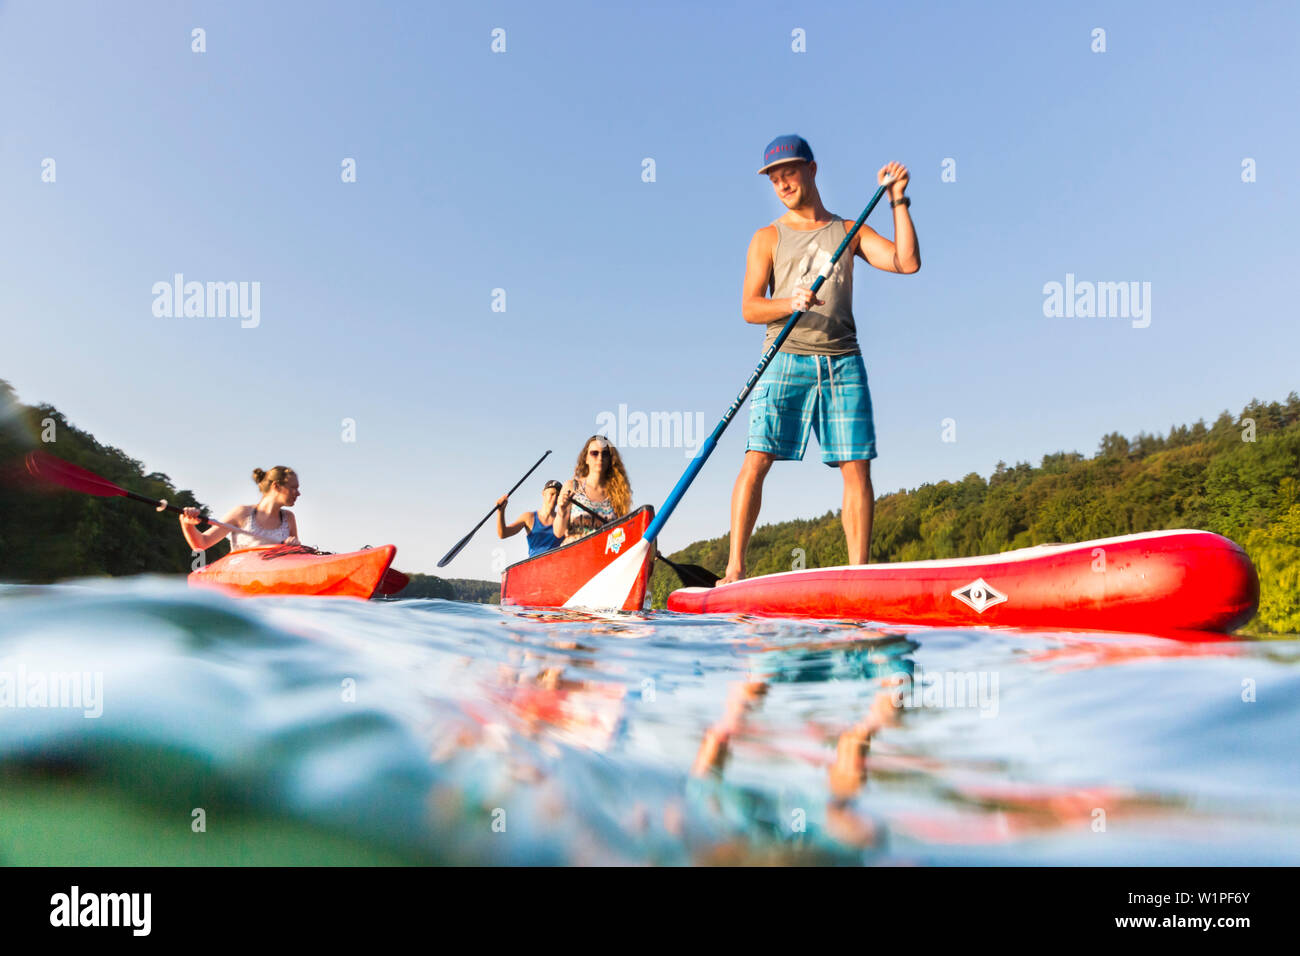 Stand up Paddeln auf dem See, Junge mit Paddel, rot SUP, Mädchen in roten  Boot, Kanu, Kajak, Wassersport, kristallklares Wasser, See Schmaler Lusin,  Ho Stockfotografie - Alamy